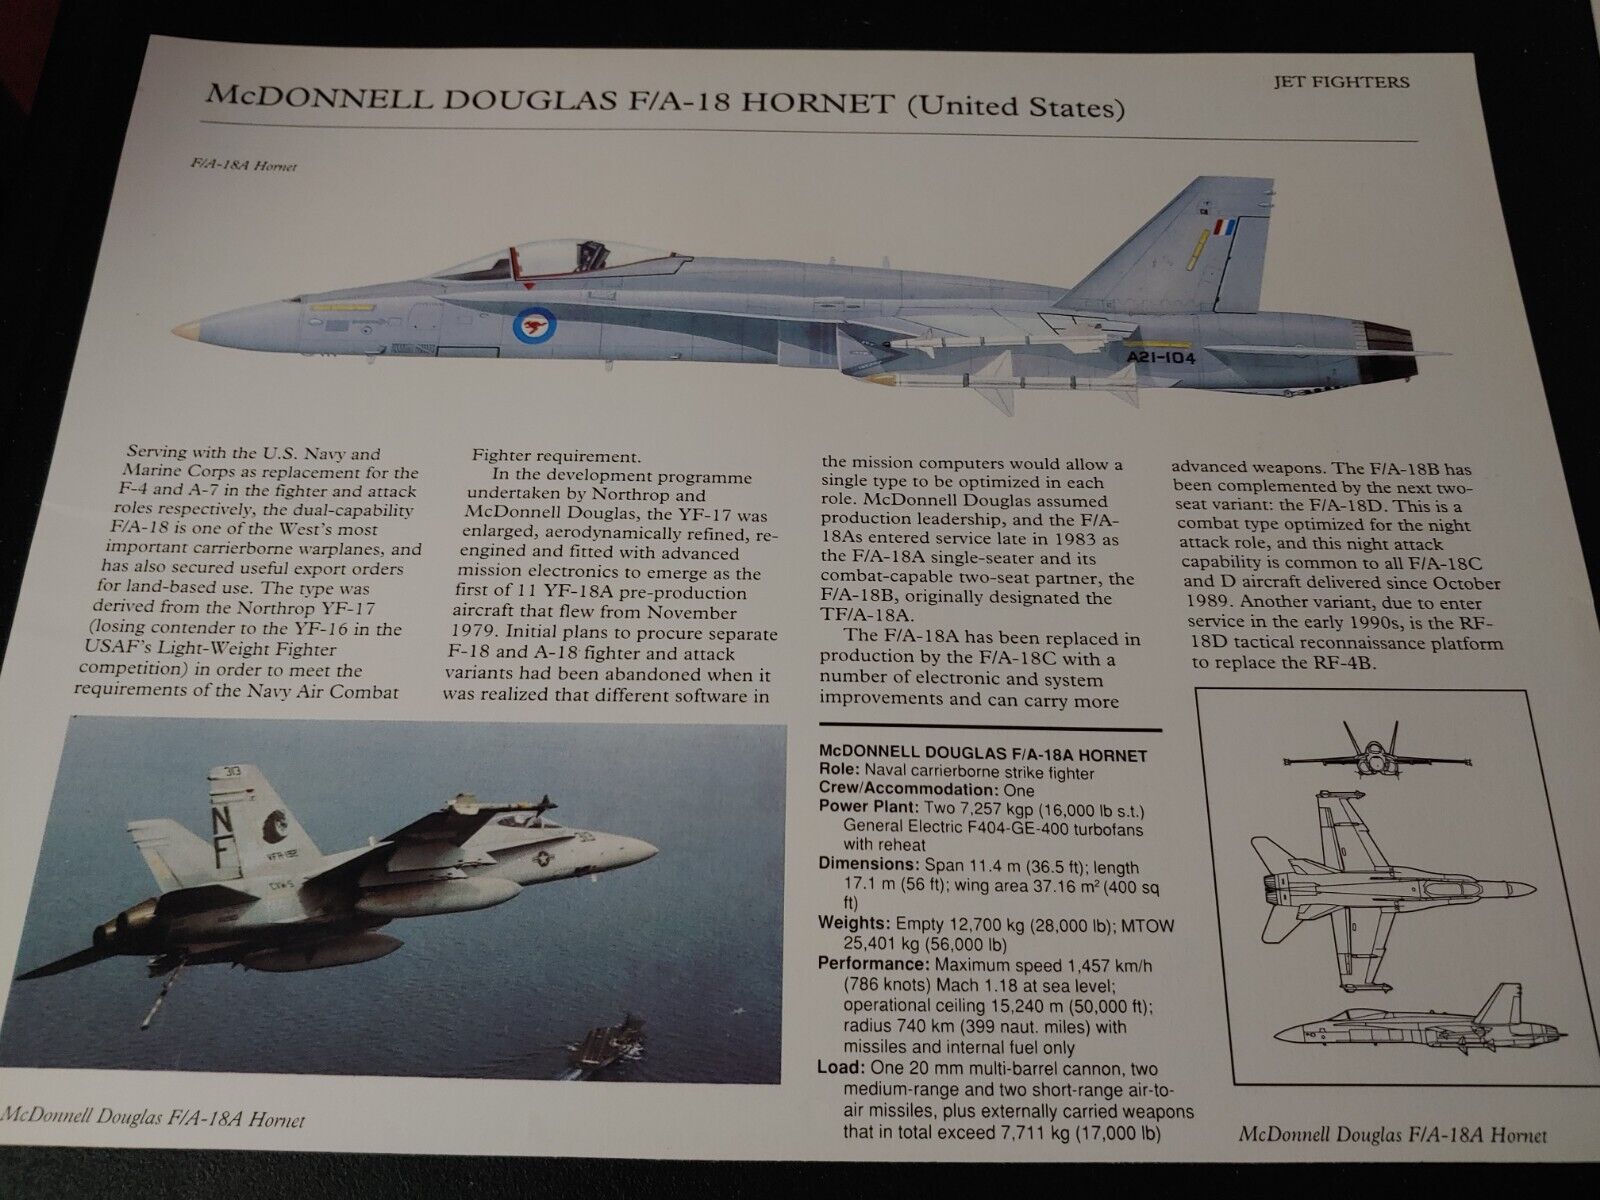 UNIQUE ~ McDonnell Douglas F/A 18 Hornet Aircraft Profile Data Print